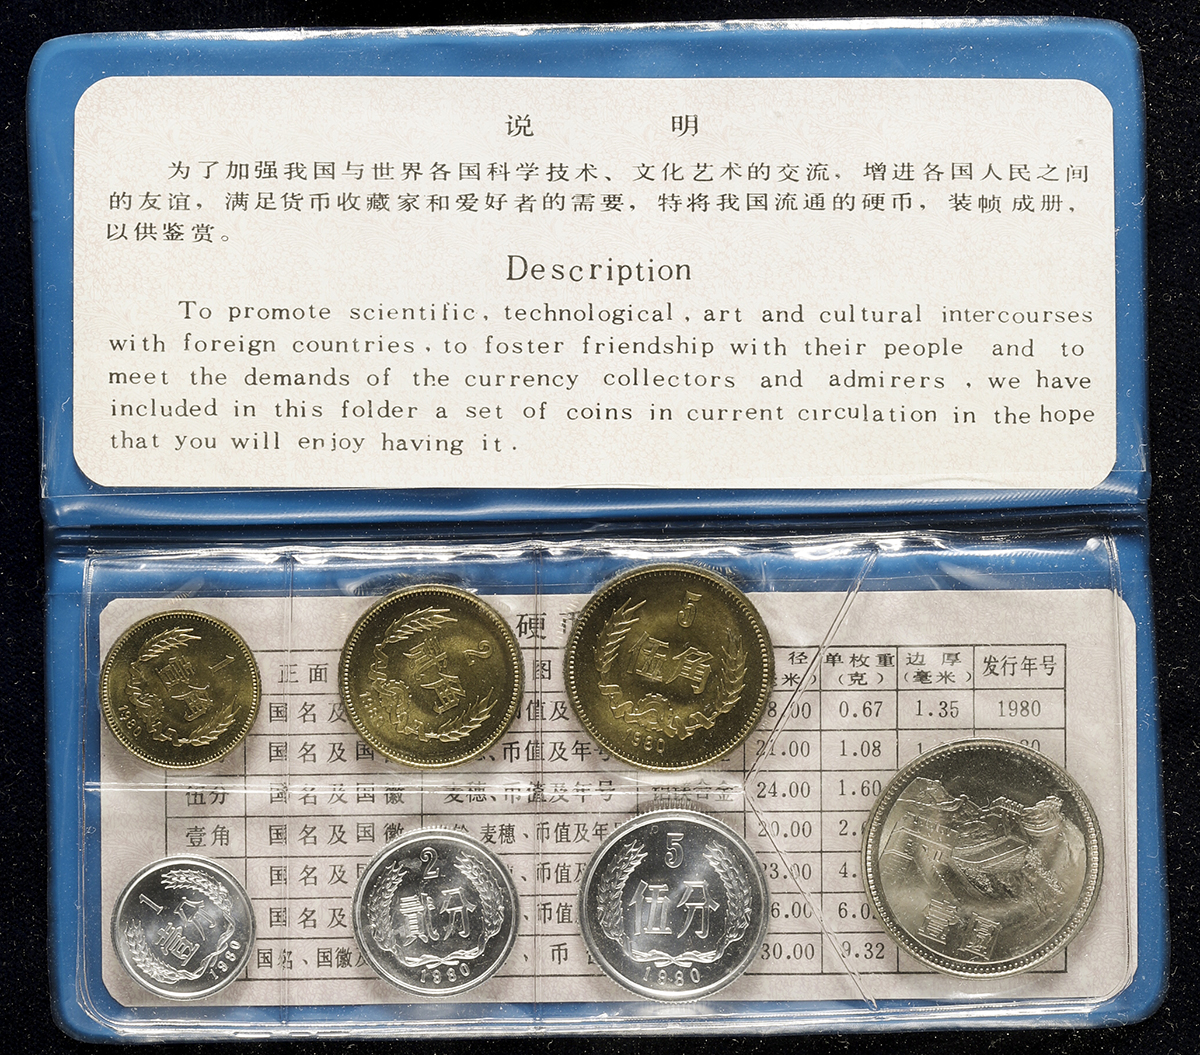 限时竞拍 中華人民共和国people S Republic Of China Mint Set 1980 青 オリジナルカバーwith Original Cover